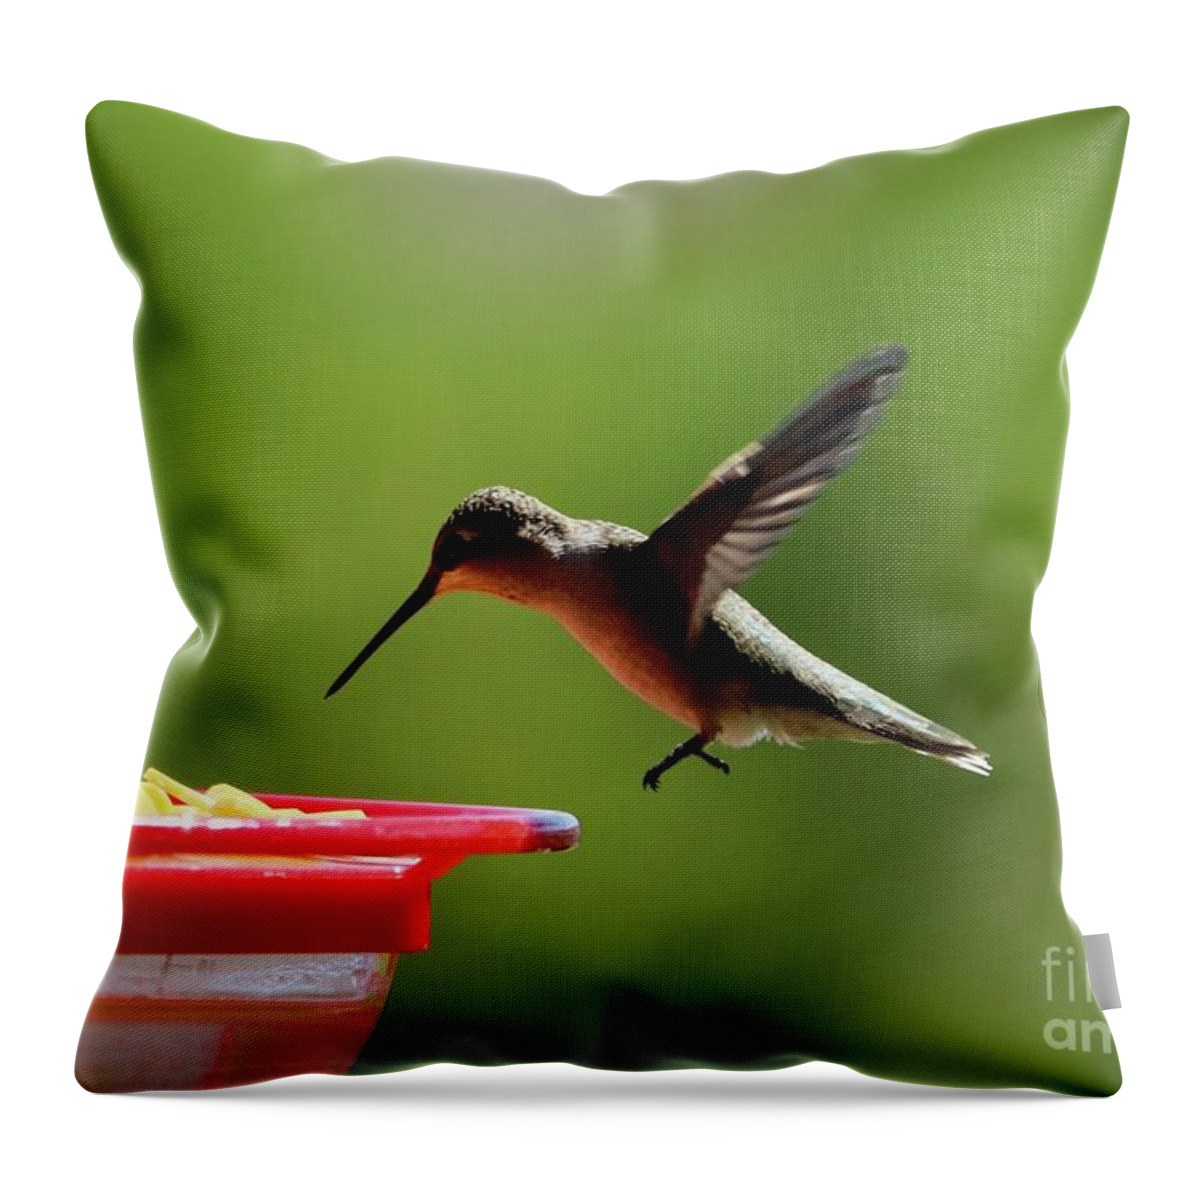 Hummingbird Throw Pillow featuring the photograph Hummingbird Approach by Carol Groenen